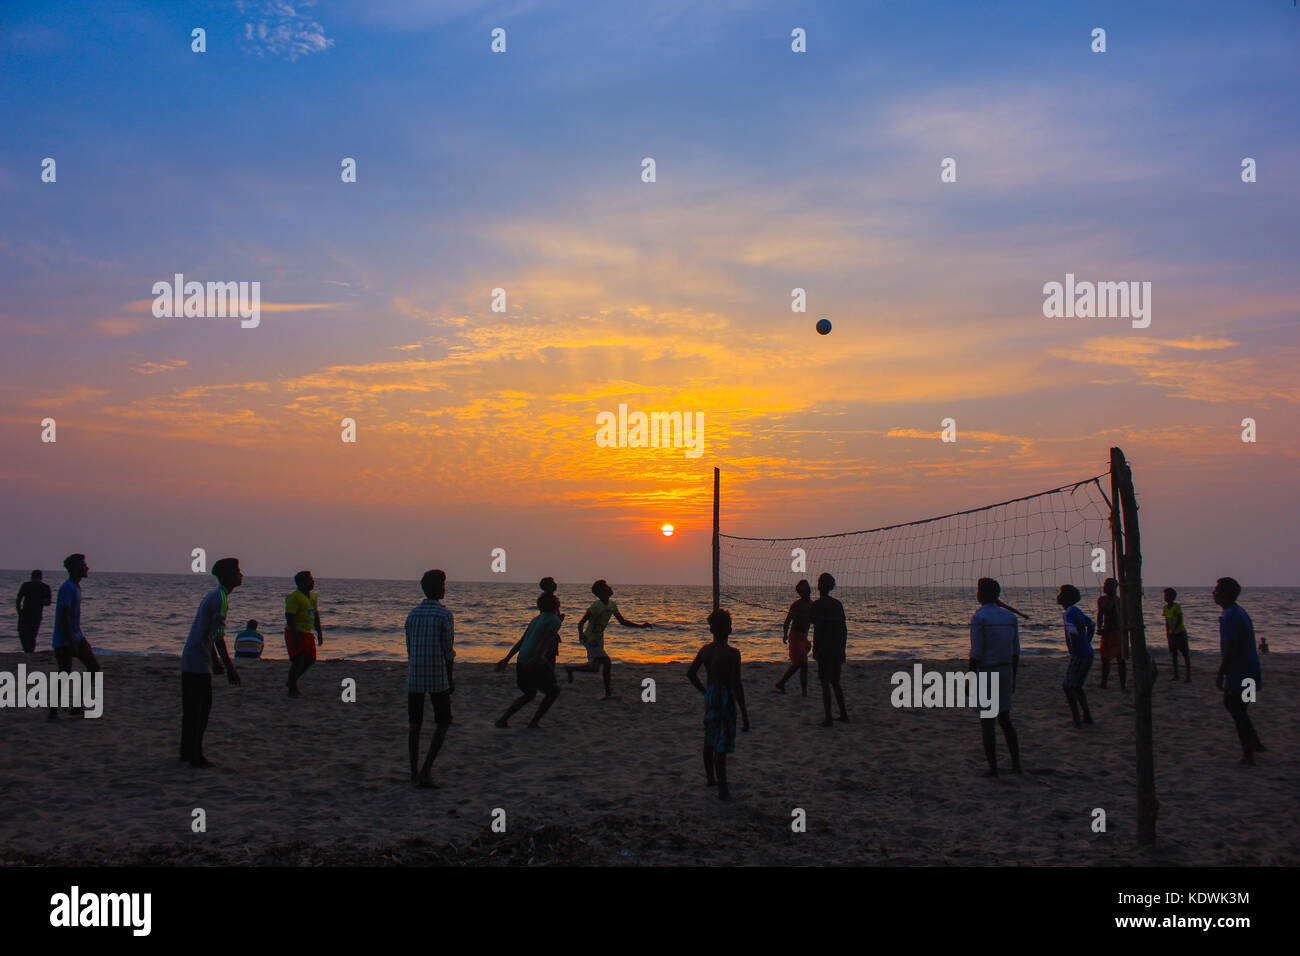 Kerala Photos - Beach Photos - Sunset Stock Photo